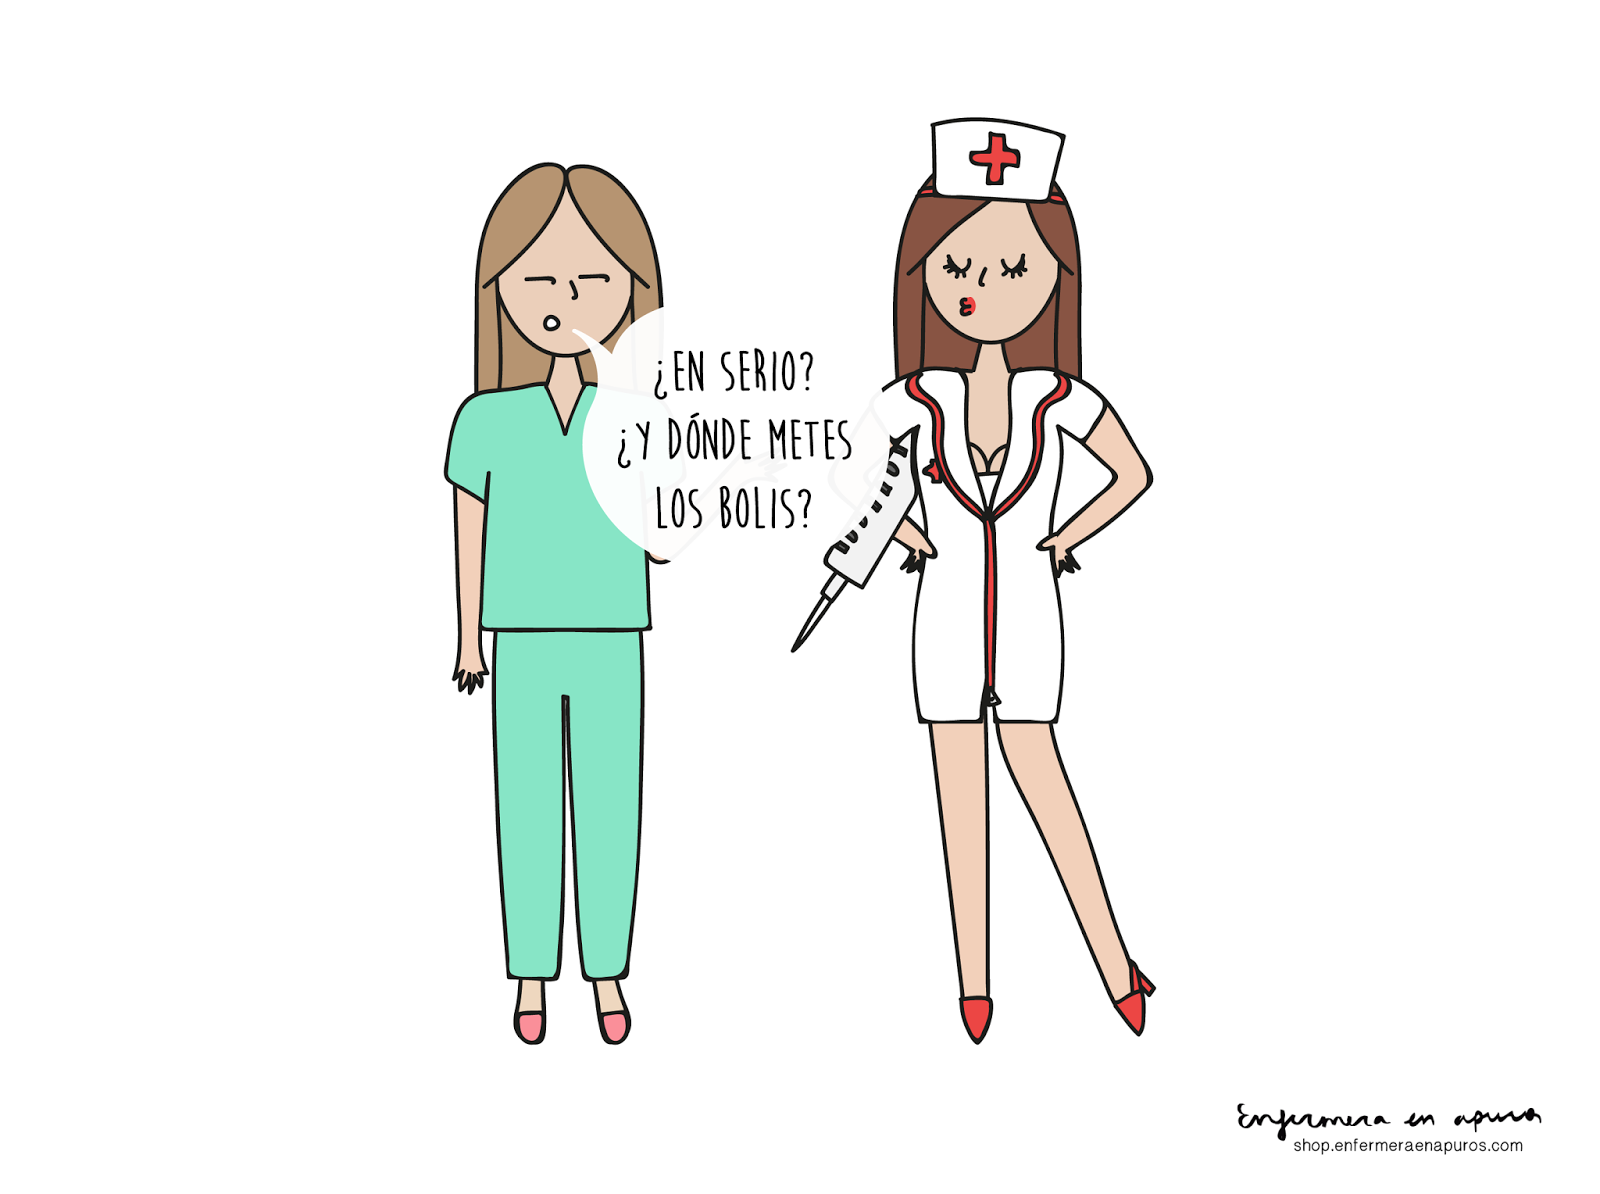 Enfermera Saturada: Deberíamos llevar encima un esparadrapo